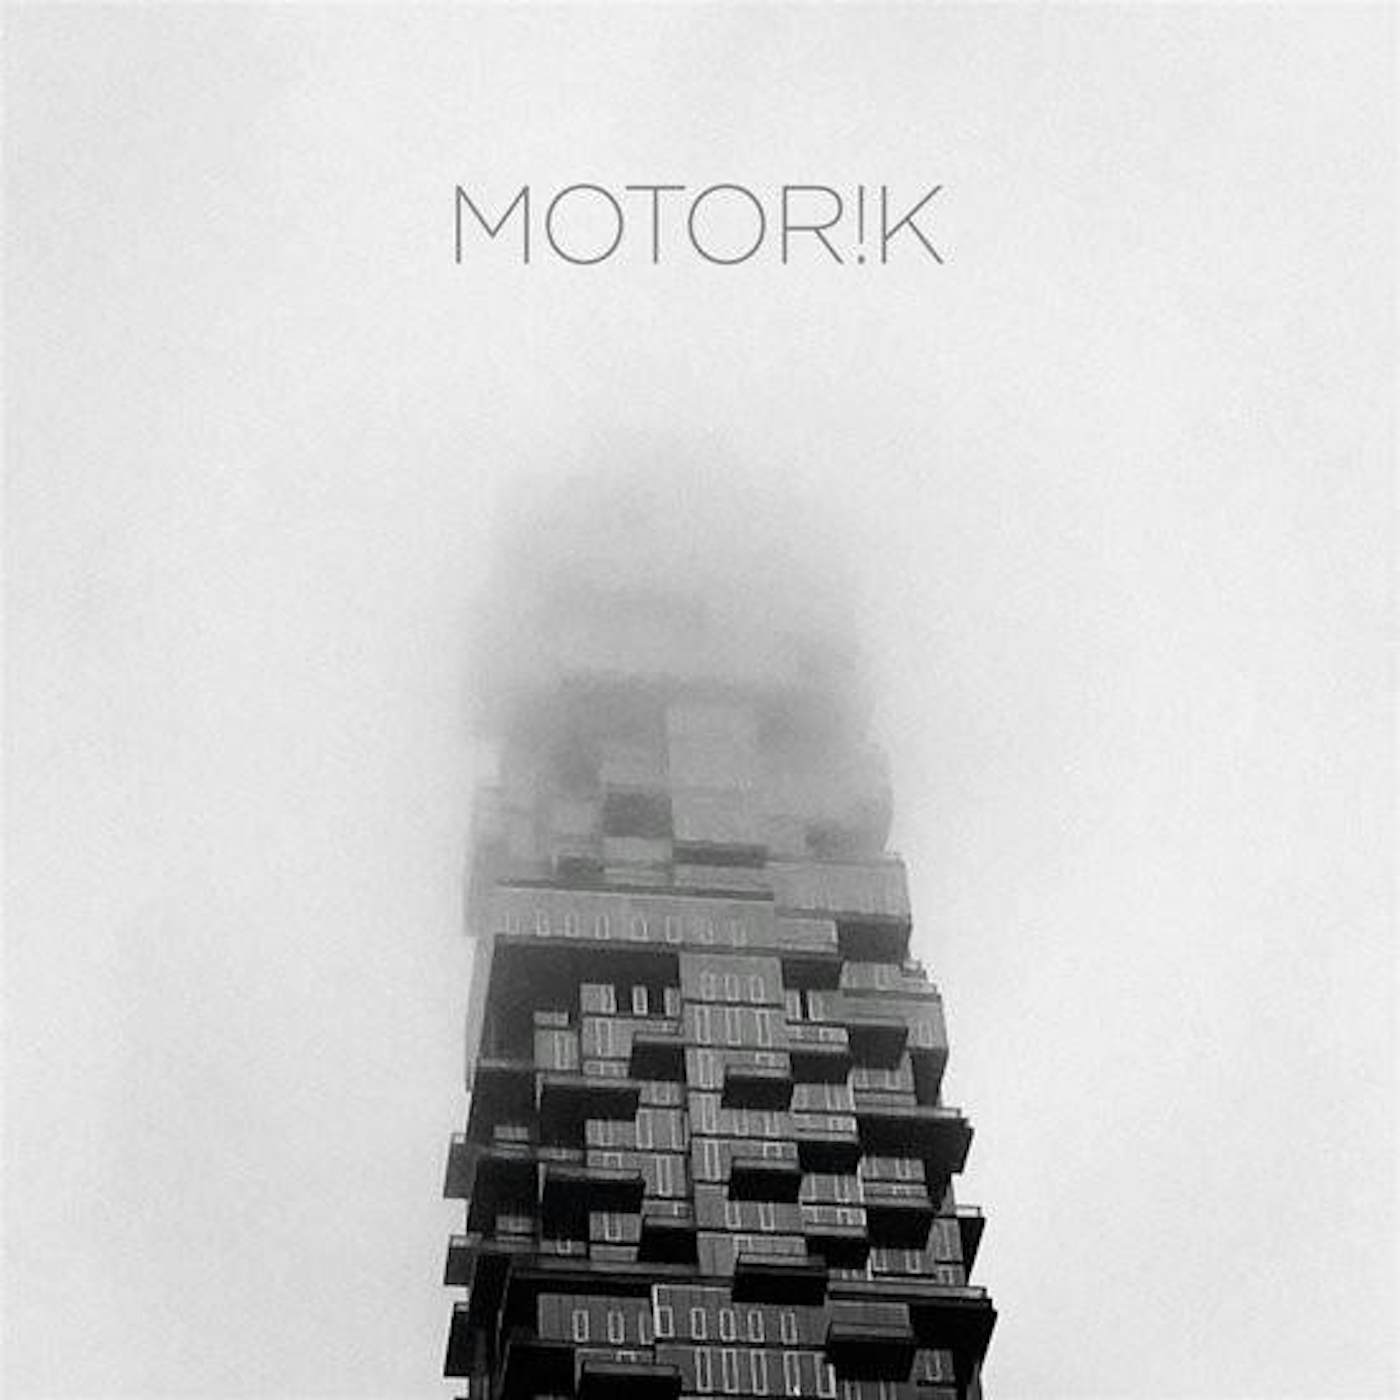 MOTOR!K 2 (2LP/IMPORT) Vinyl Record